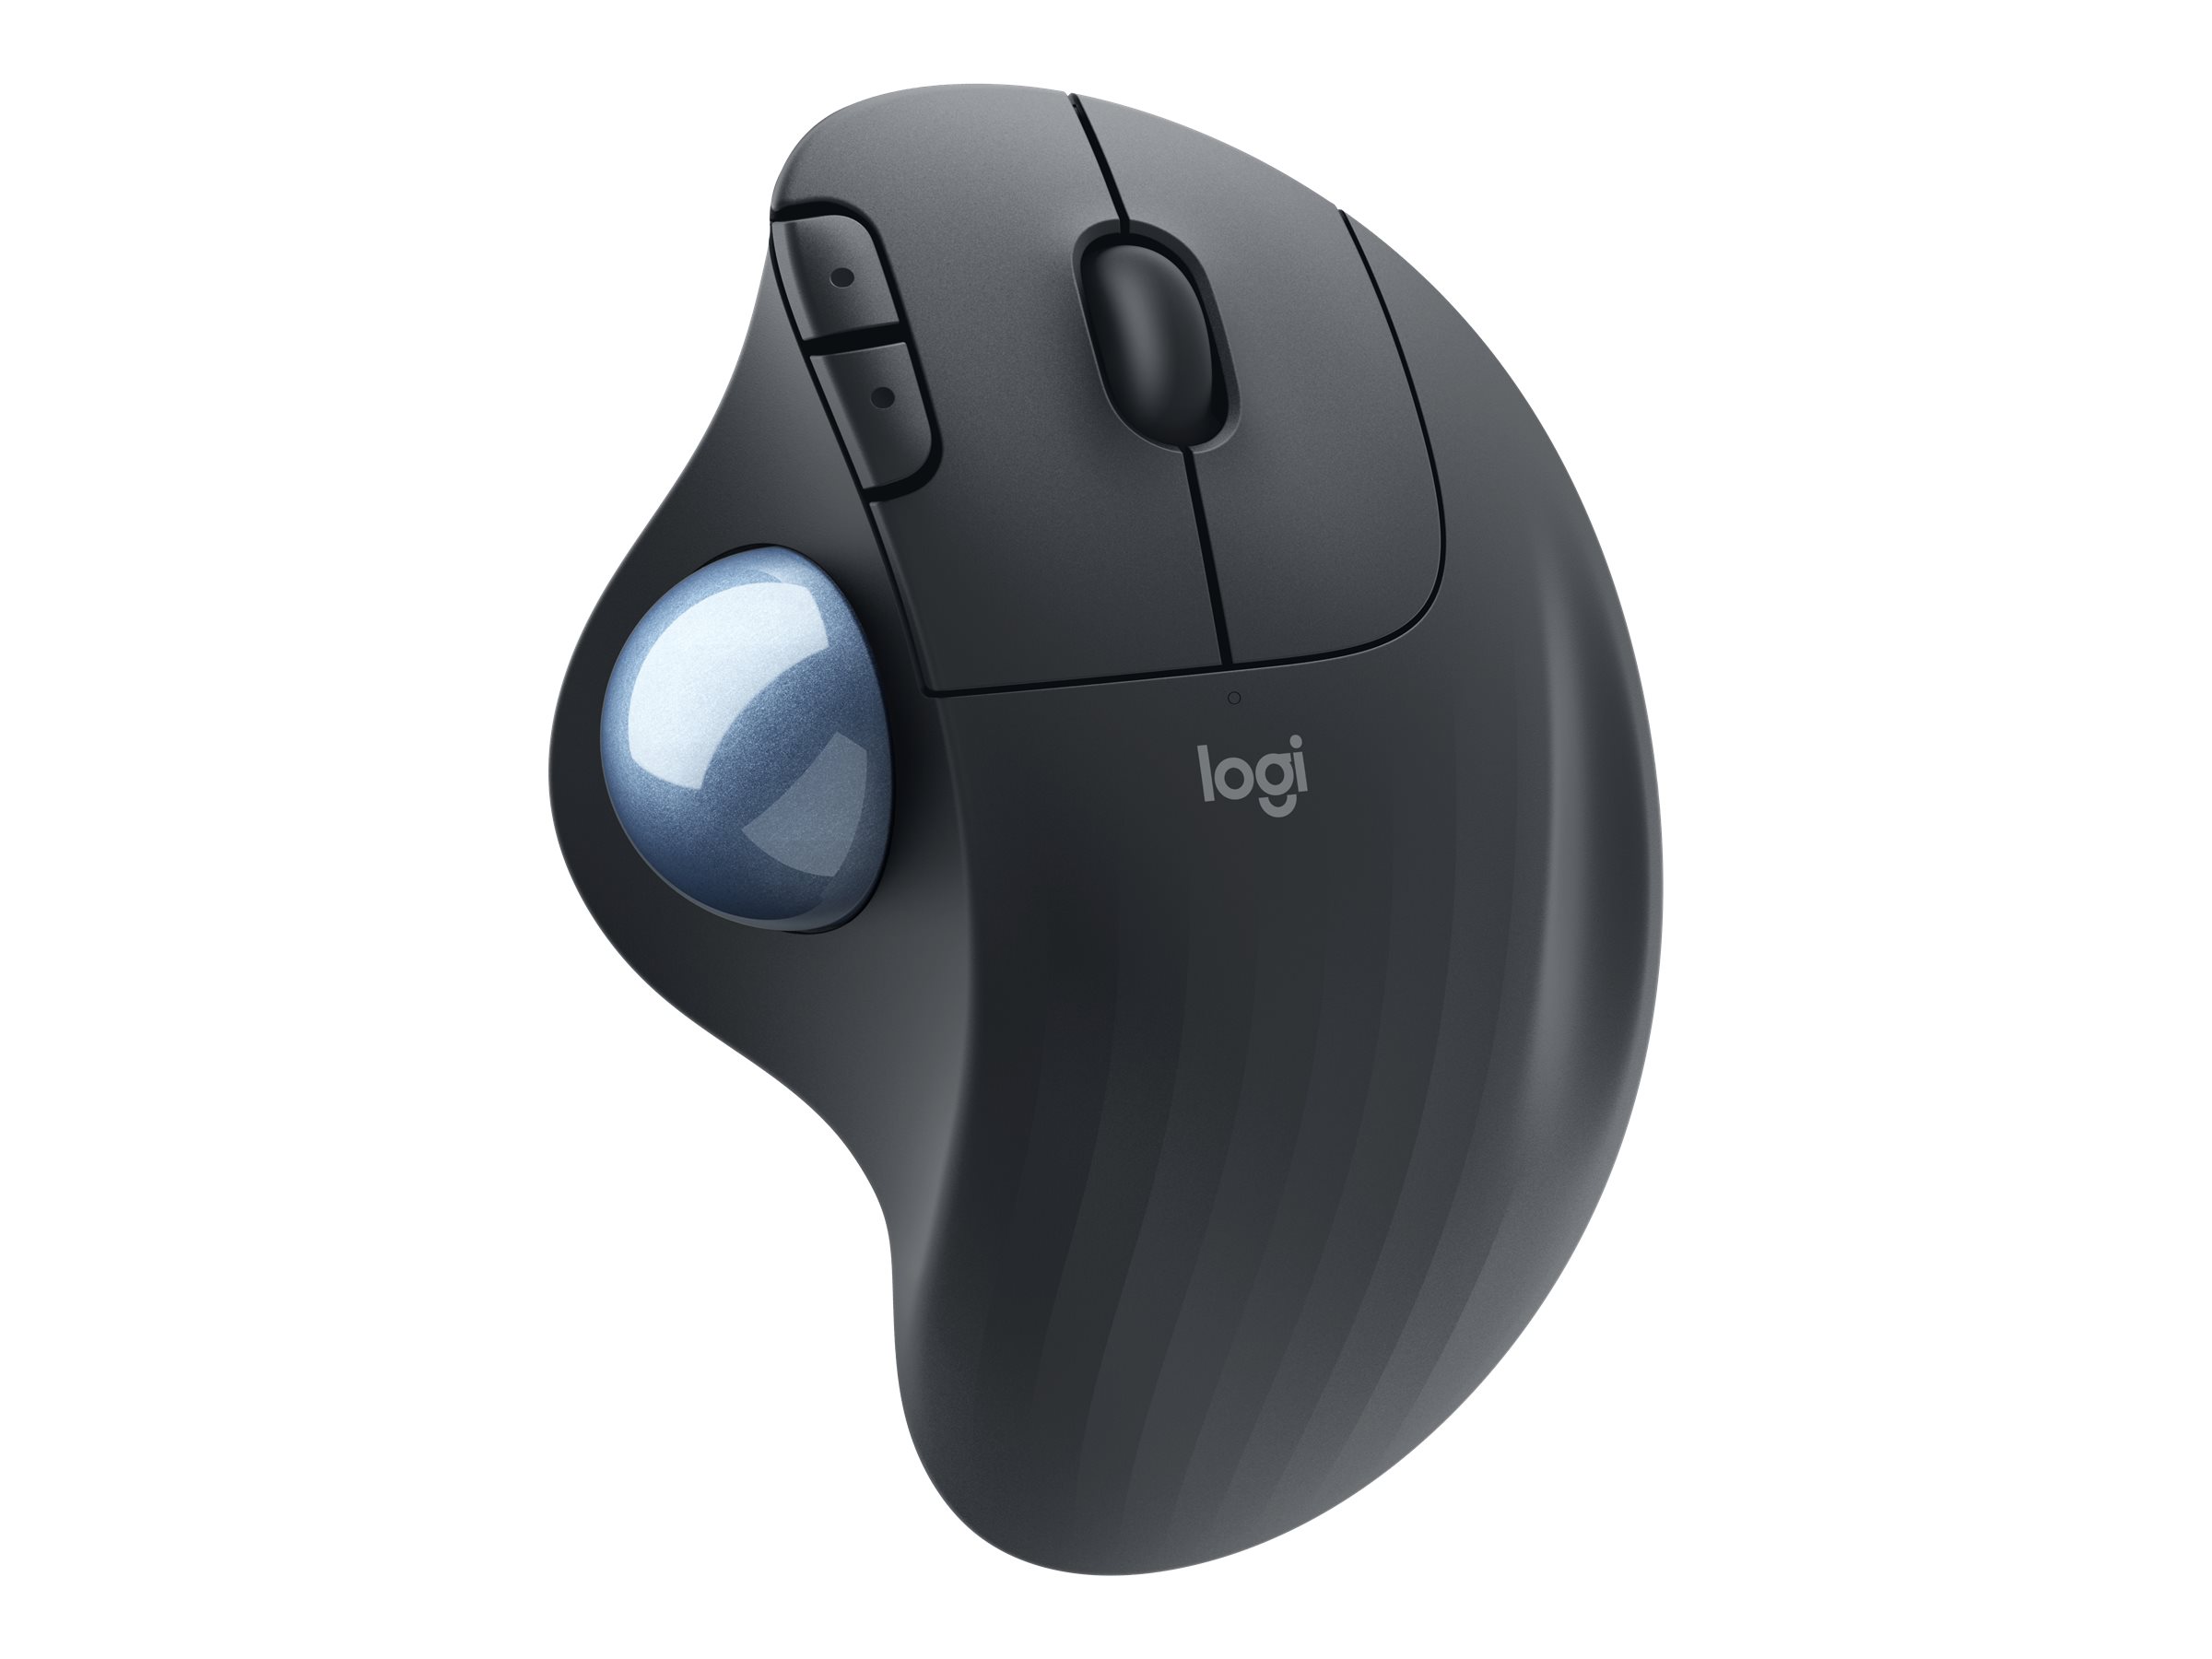 Logitech Ergo Series ERGO M575 pour les entreprises - Boule de commande - pour droitiers - optique - 5 boutons - sans fil - Bluetooth - récepteur USB Logitech Logi Bolt - graphite - 910-006221 - Dispositifs de pointage